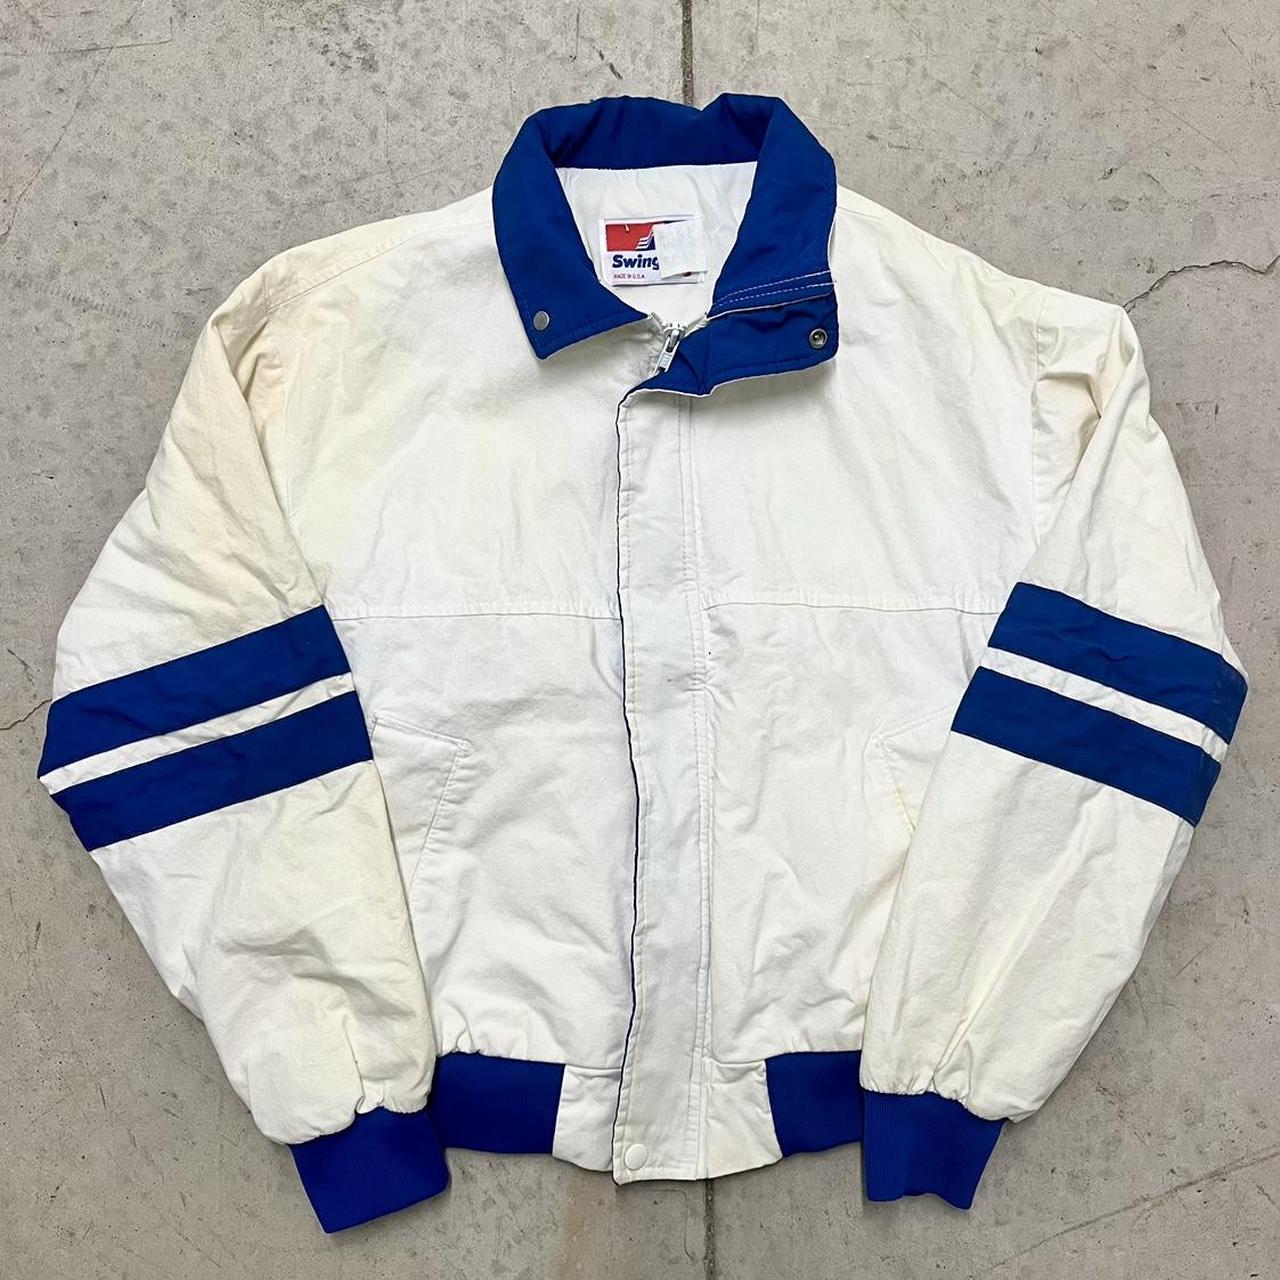 Vintage 90s sports jacket 🏈 90s swingster jacket... - Depop